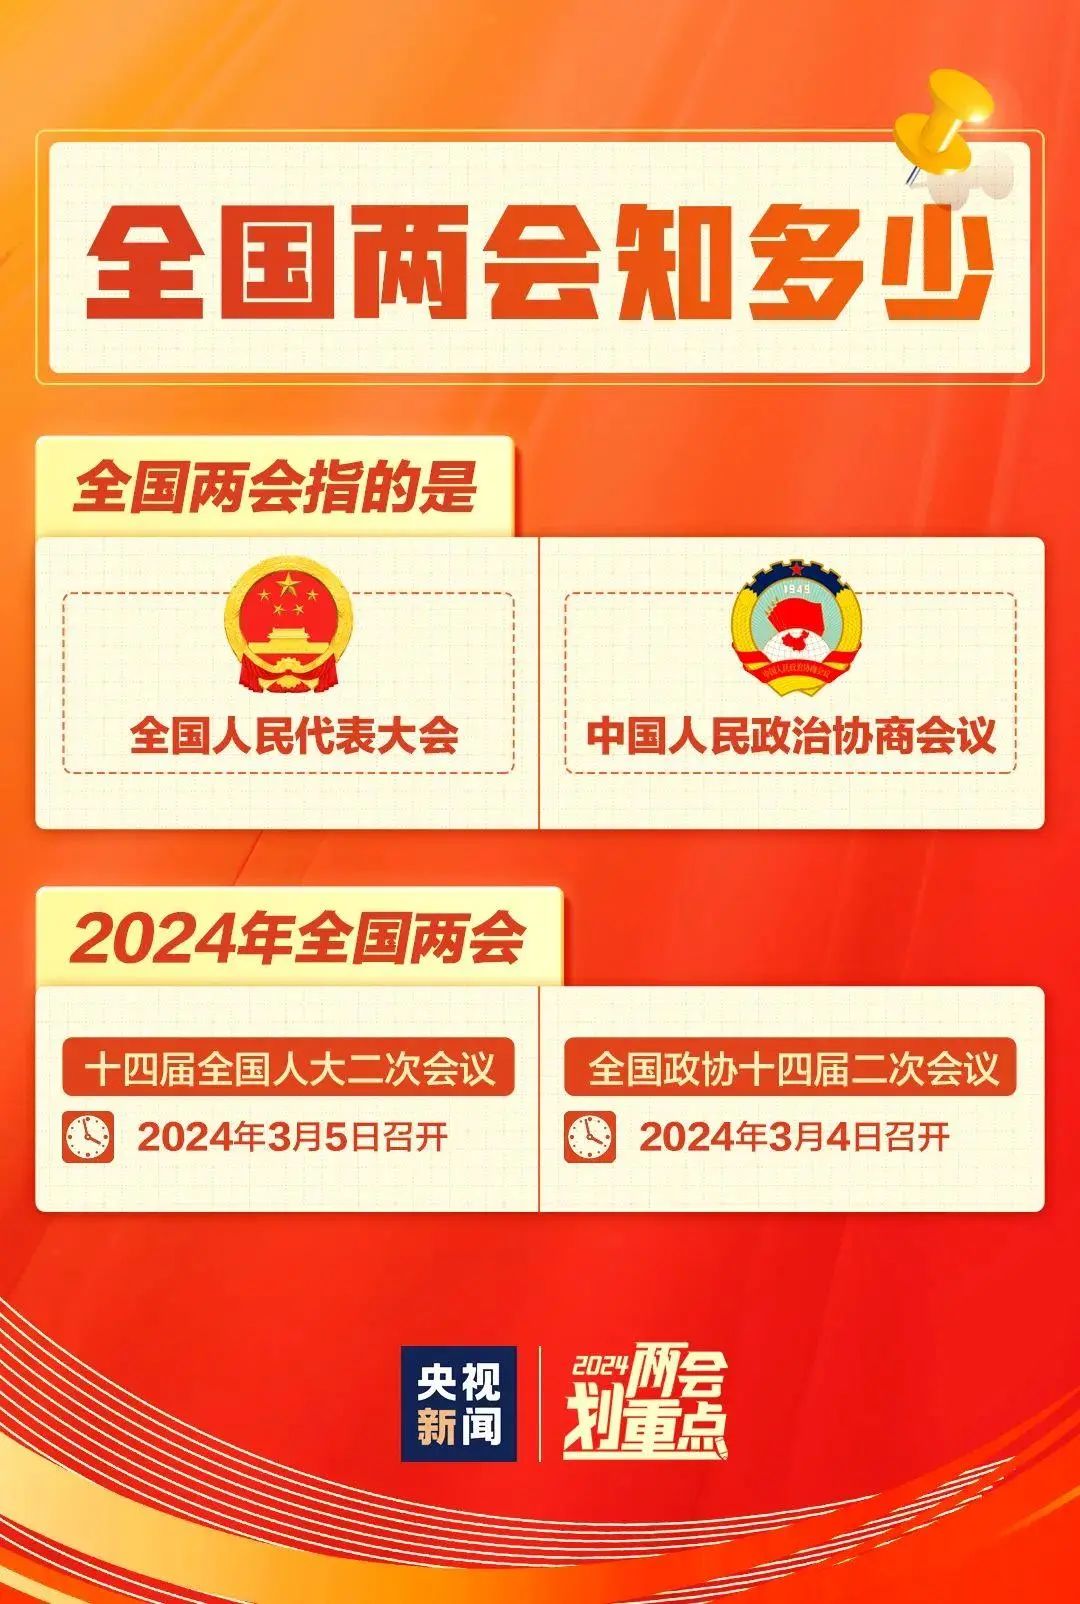 广东省四会监狱网站